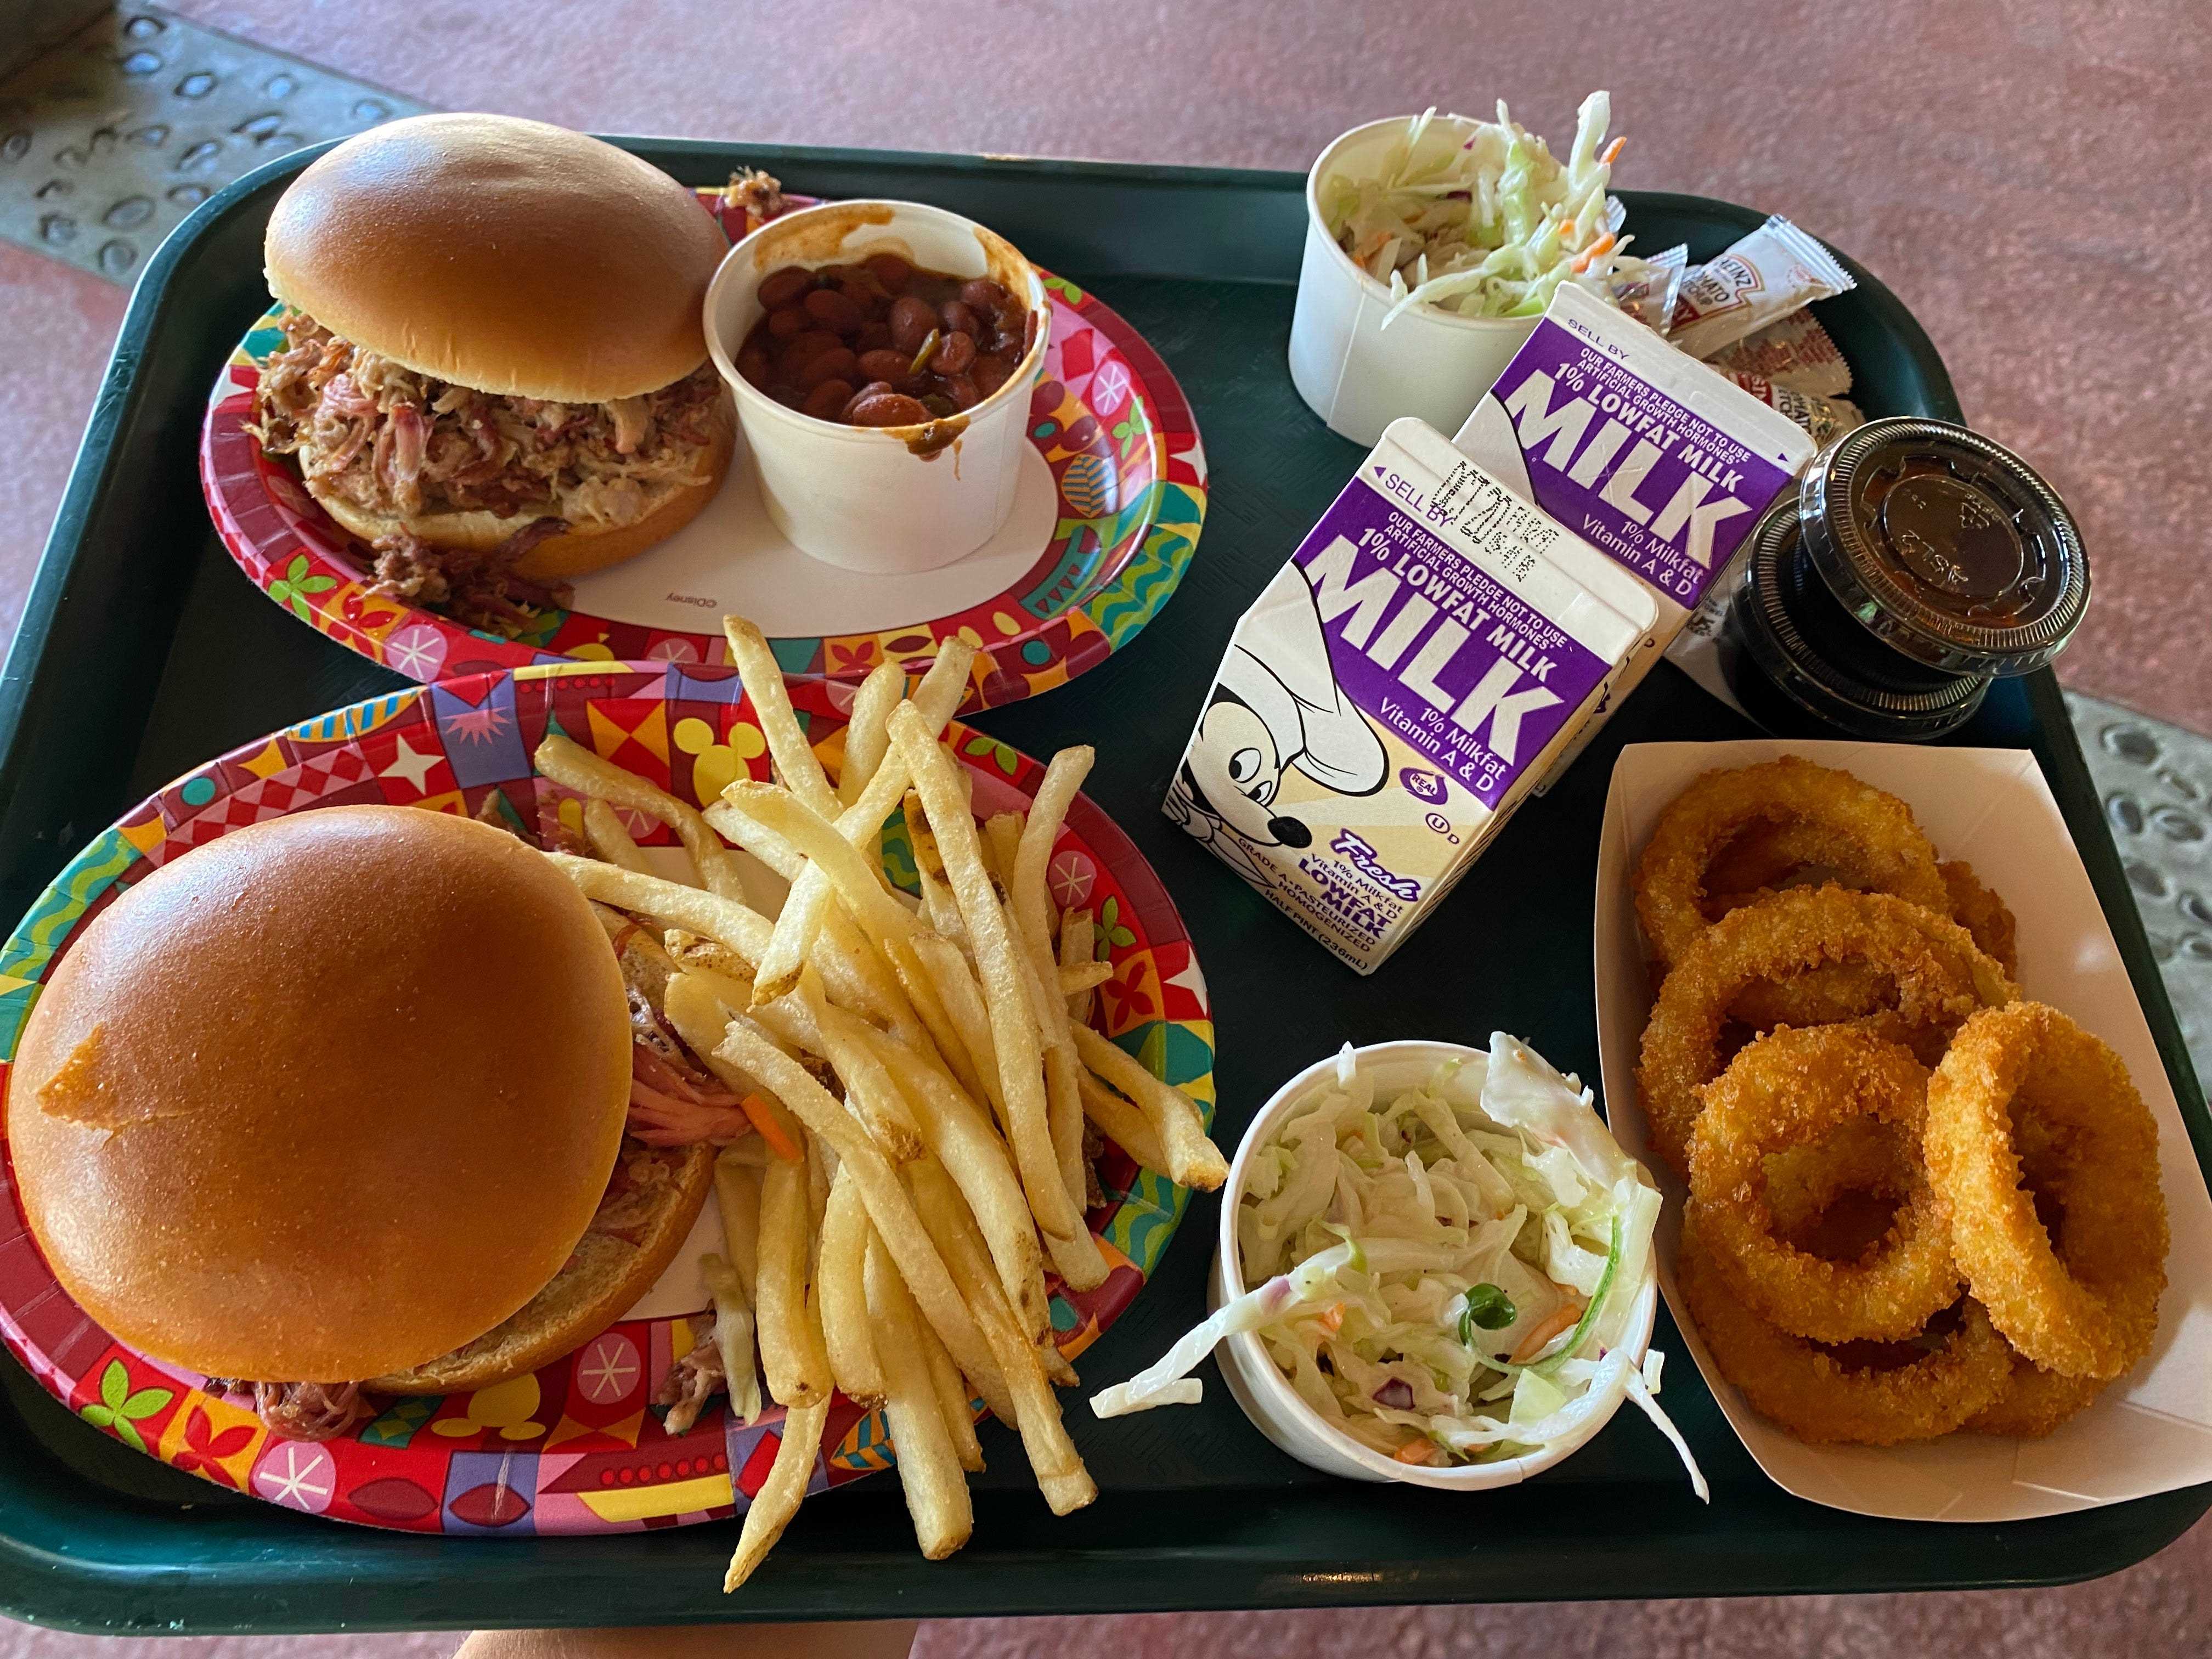 Cafeteria-Tablett mit Pulled Pork-Sandwiches, Zwiebelringen und Getränken aus dem Disney-Tierreich